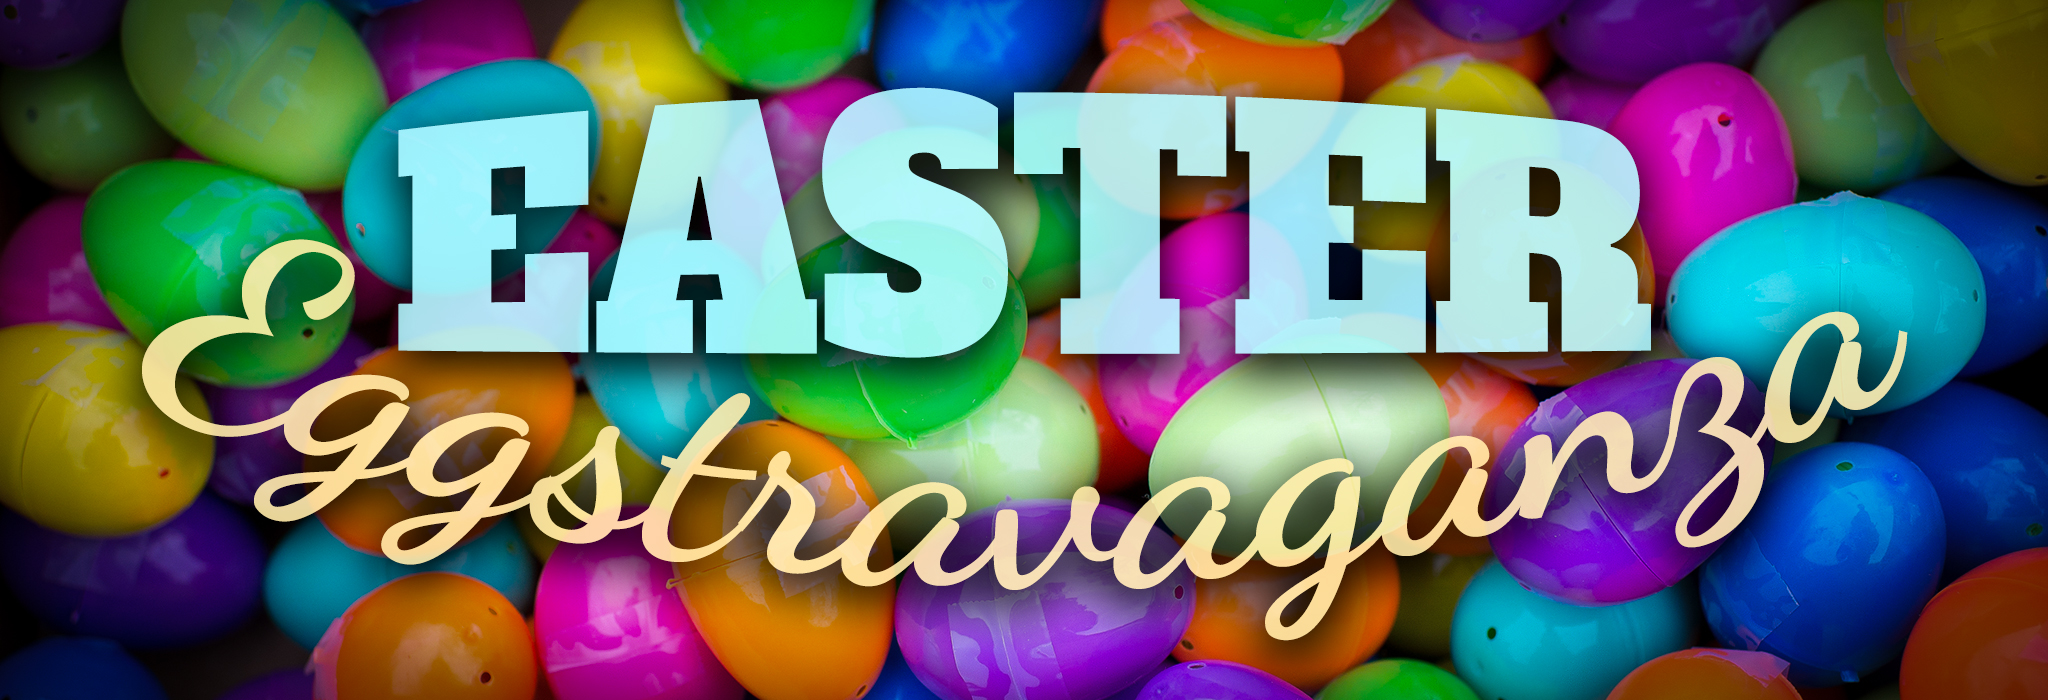 Easter Egg Hunt Eggstravaganza